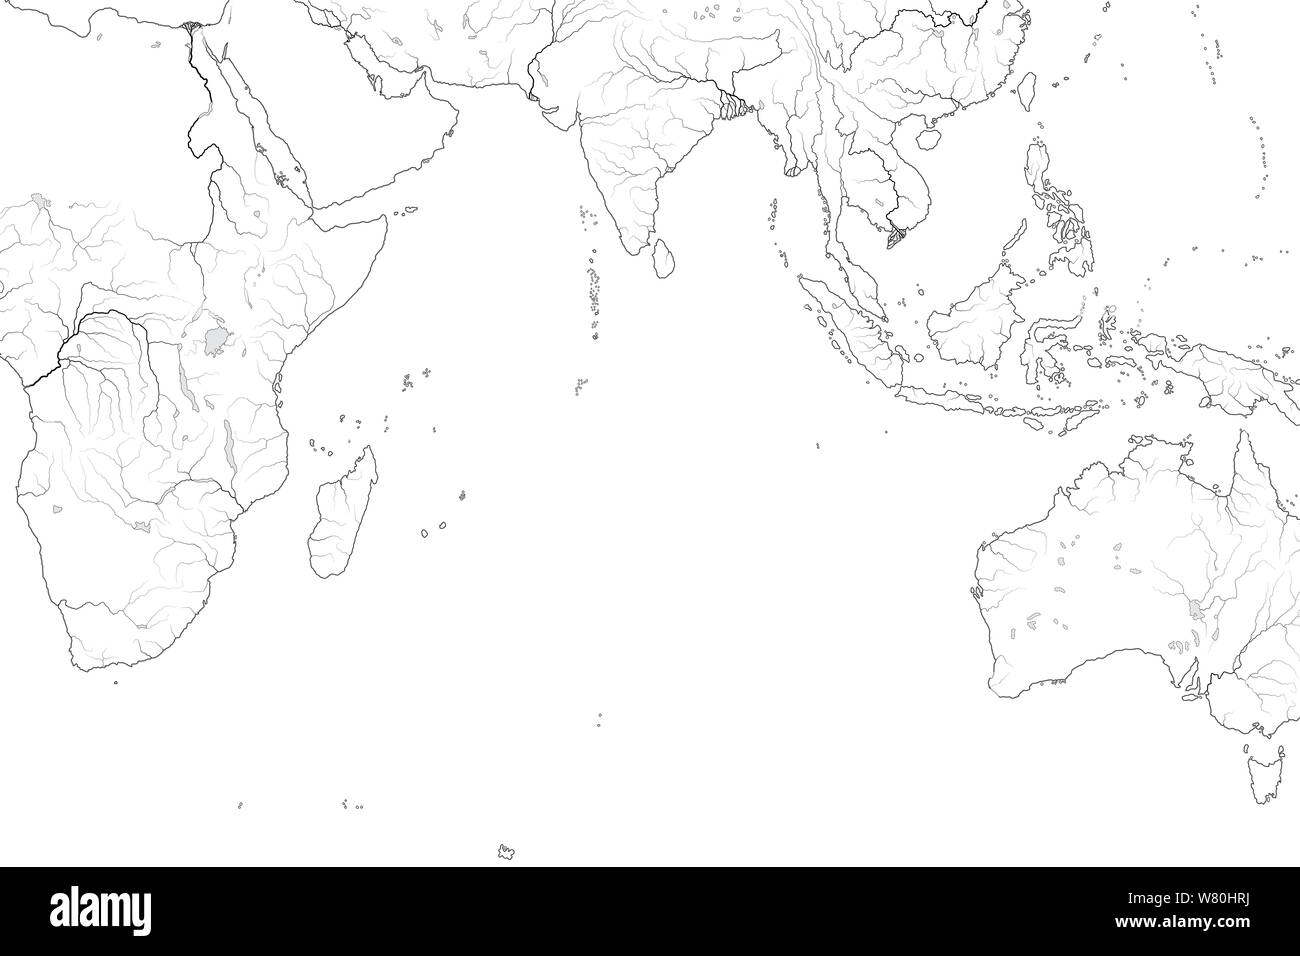 Weltkarte der INDISCHEN OZEAN: Arabisches Meer, die Bucht von Bengalen, Sri Lanka, auf den Malediven, den Seychellen, Ceylon, Indien, Afrika, Australien, Indonesien, Madagaskar. Stockfoto